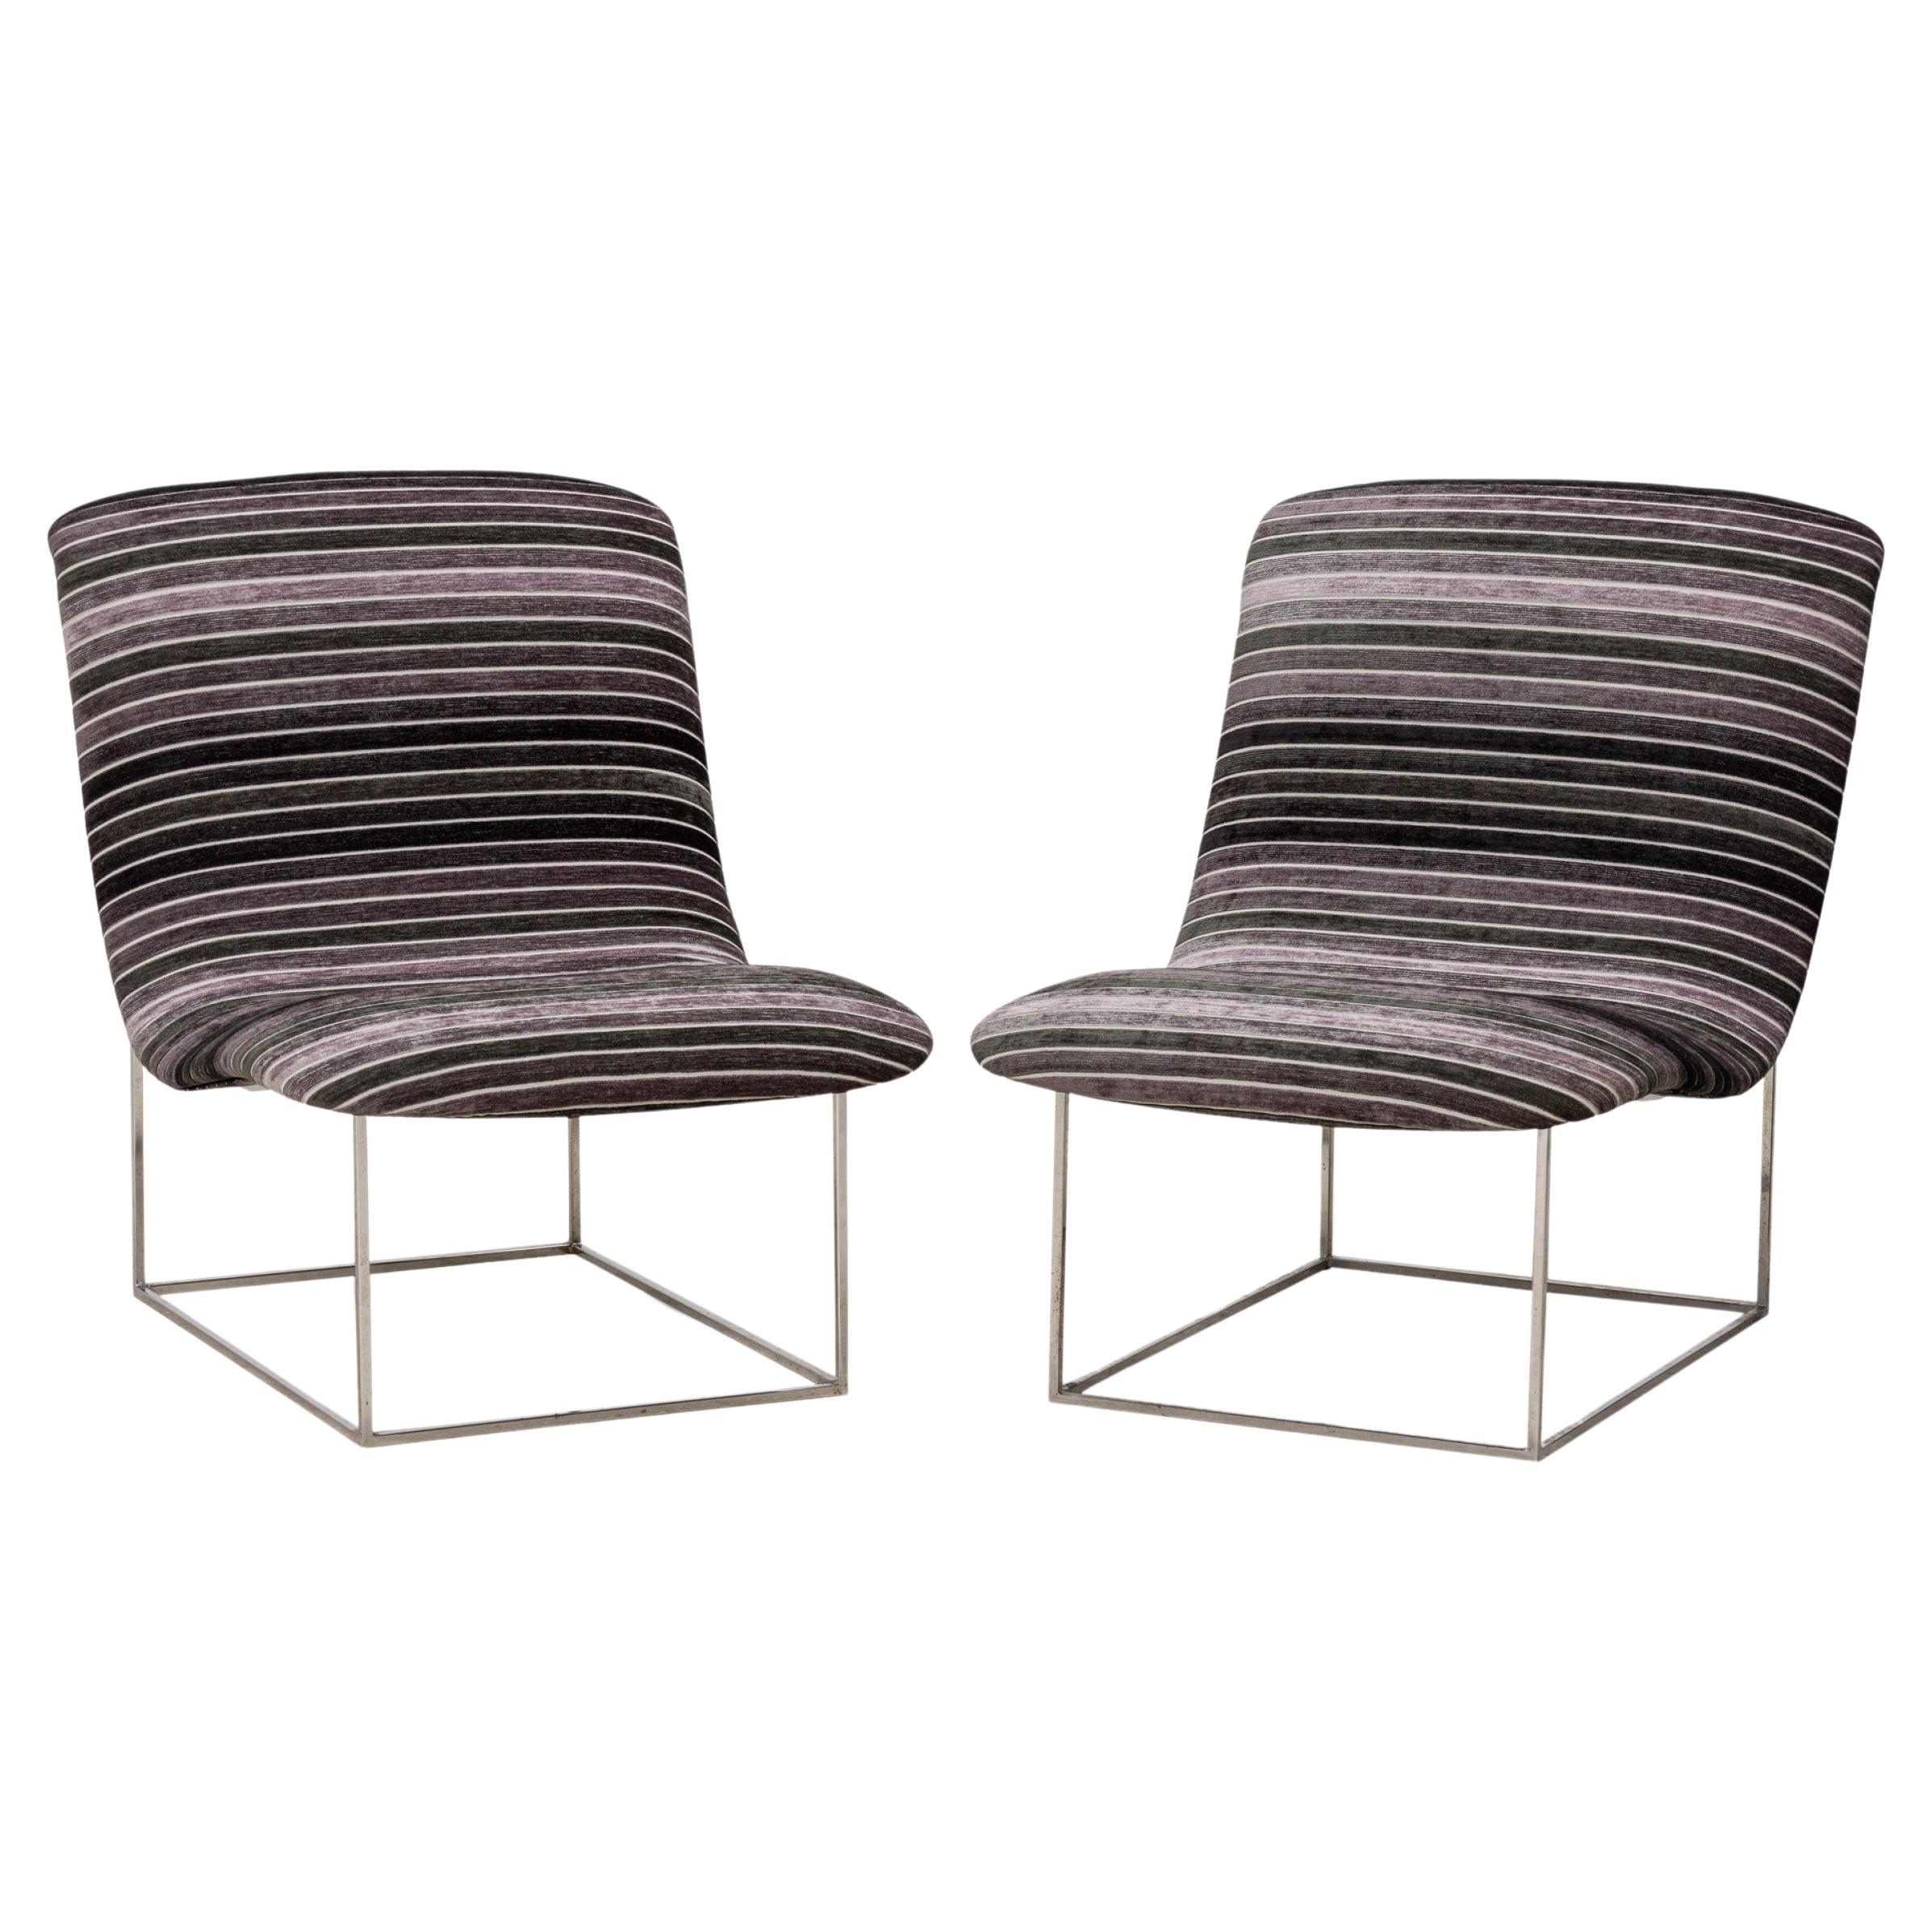 Paire de chaises pantoufles Milo Baughman à revêtement chromé et à rayures noires et grises